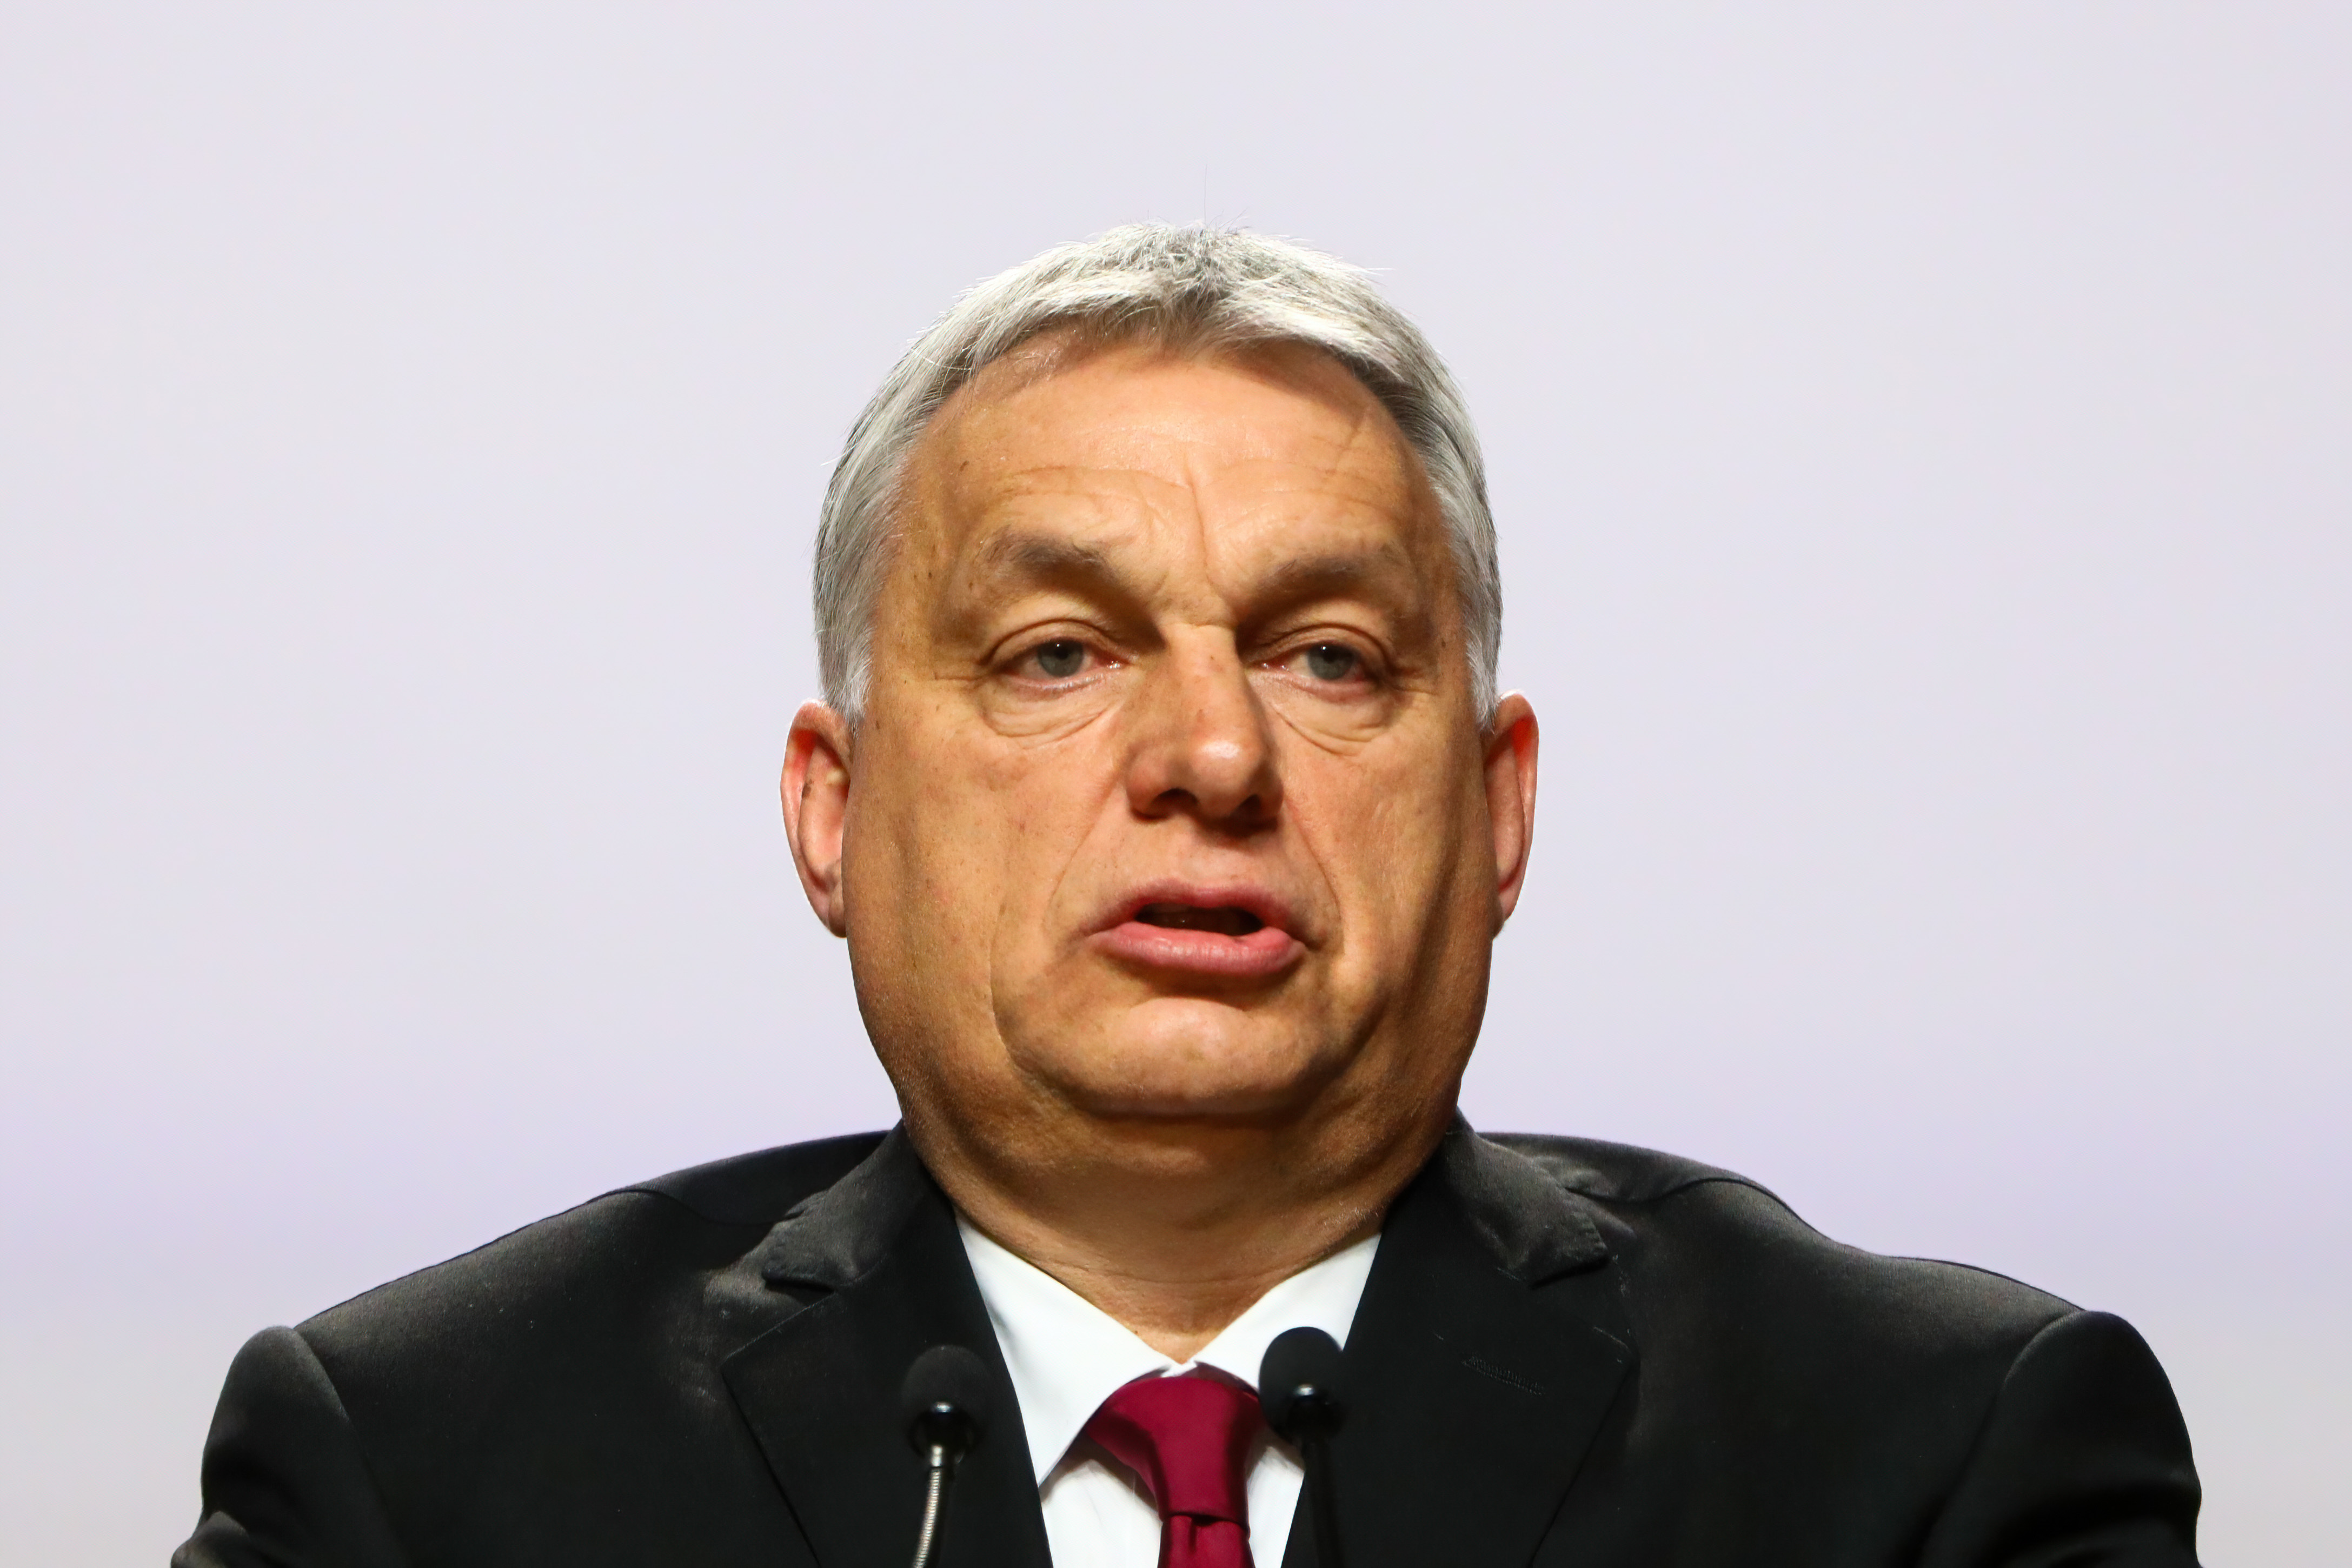 Der ungarische Premierminister Viktor Orbán